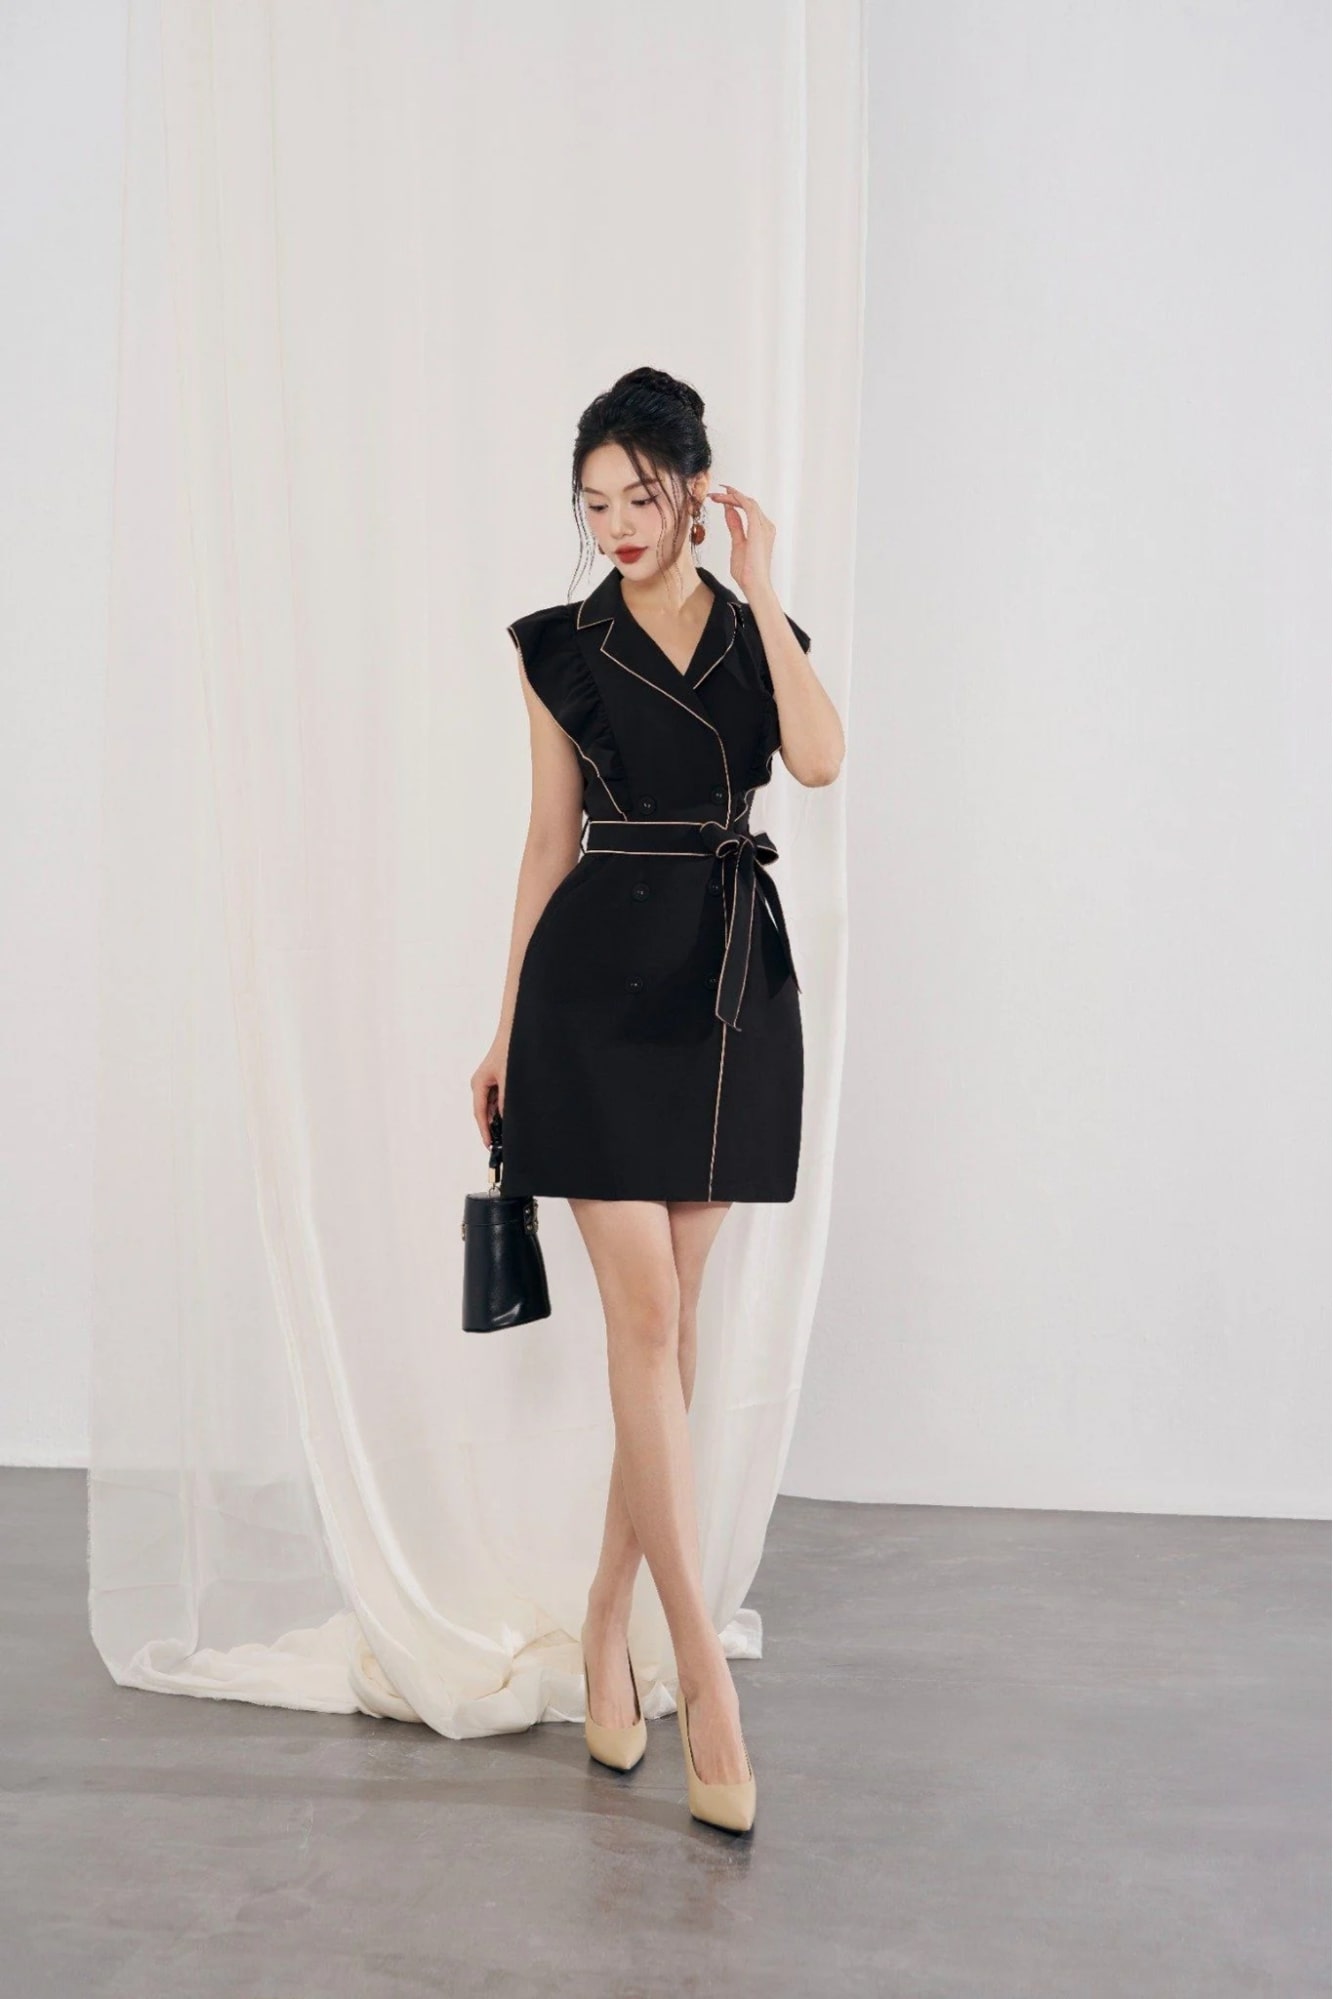 SHIP 2H] Váy đầm đen cao cấp dự tiệc với thiết kế dáng xòe tầng, tay dài  phối lưới sang trọng | Shopee Việt Nam